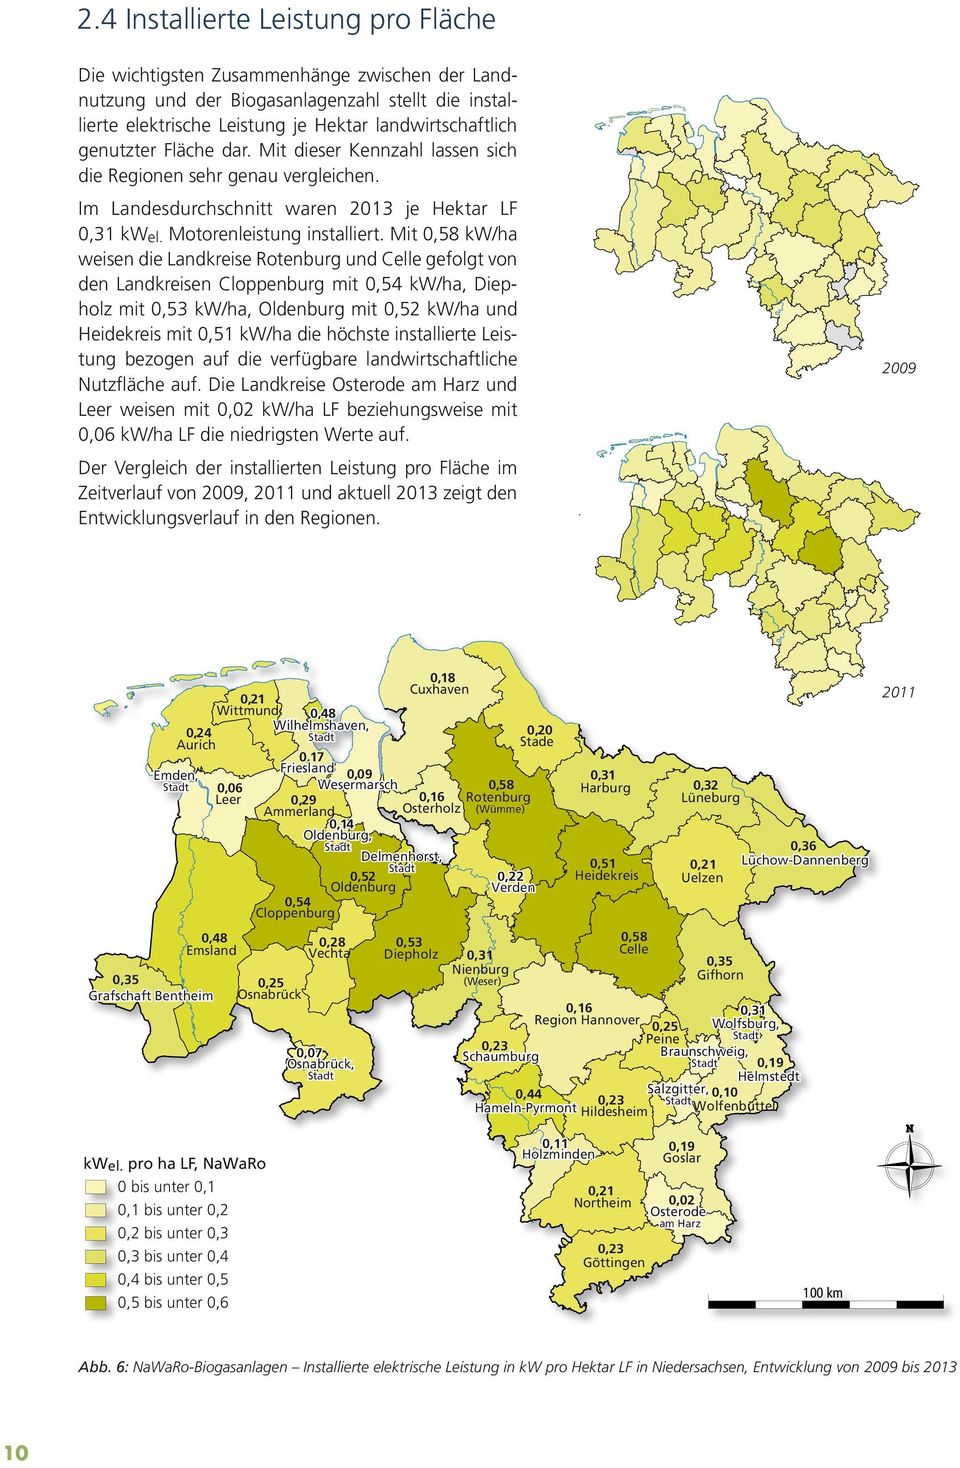 Mit 0,58 kw/ha weisen die Landkreise Rotenburg und Celle gefolgt von den Landkreisen Cloppenburg mit 0,54 kw/ha, Diepholz mit 0,53 kw/ha, Oldenburg mit 0,52 kw/ha und Heidekreis mit 0,51 kw/ha die